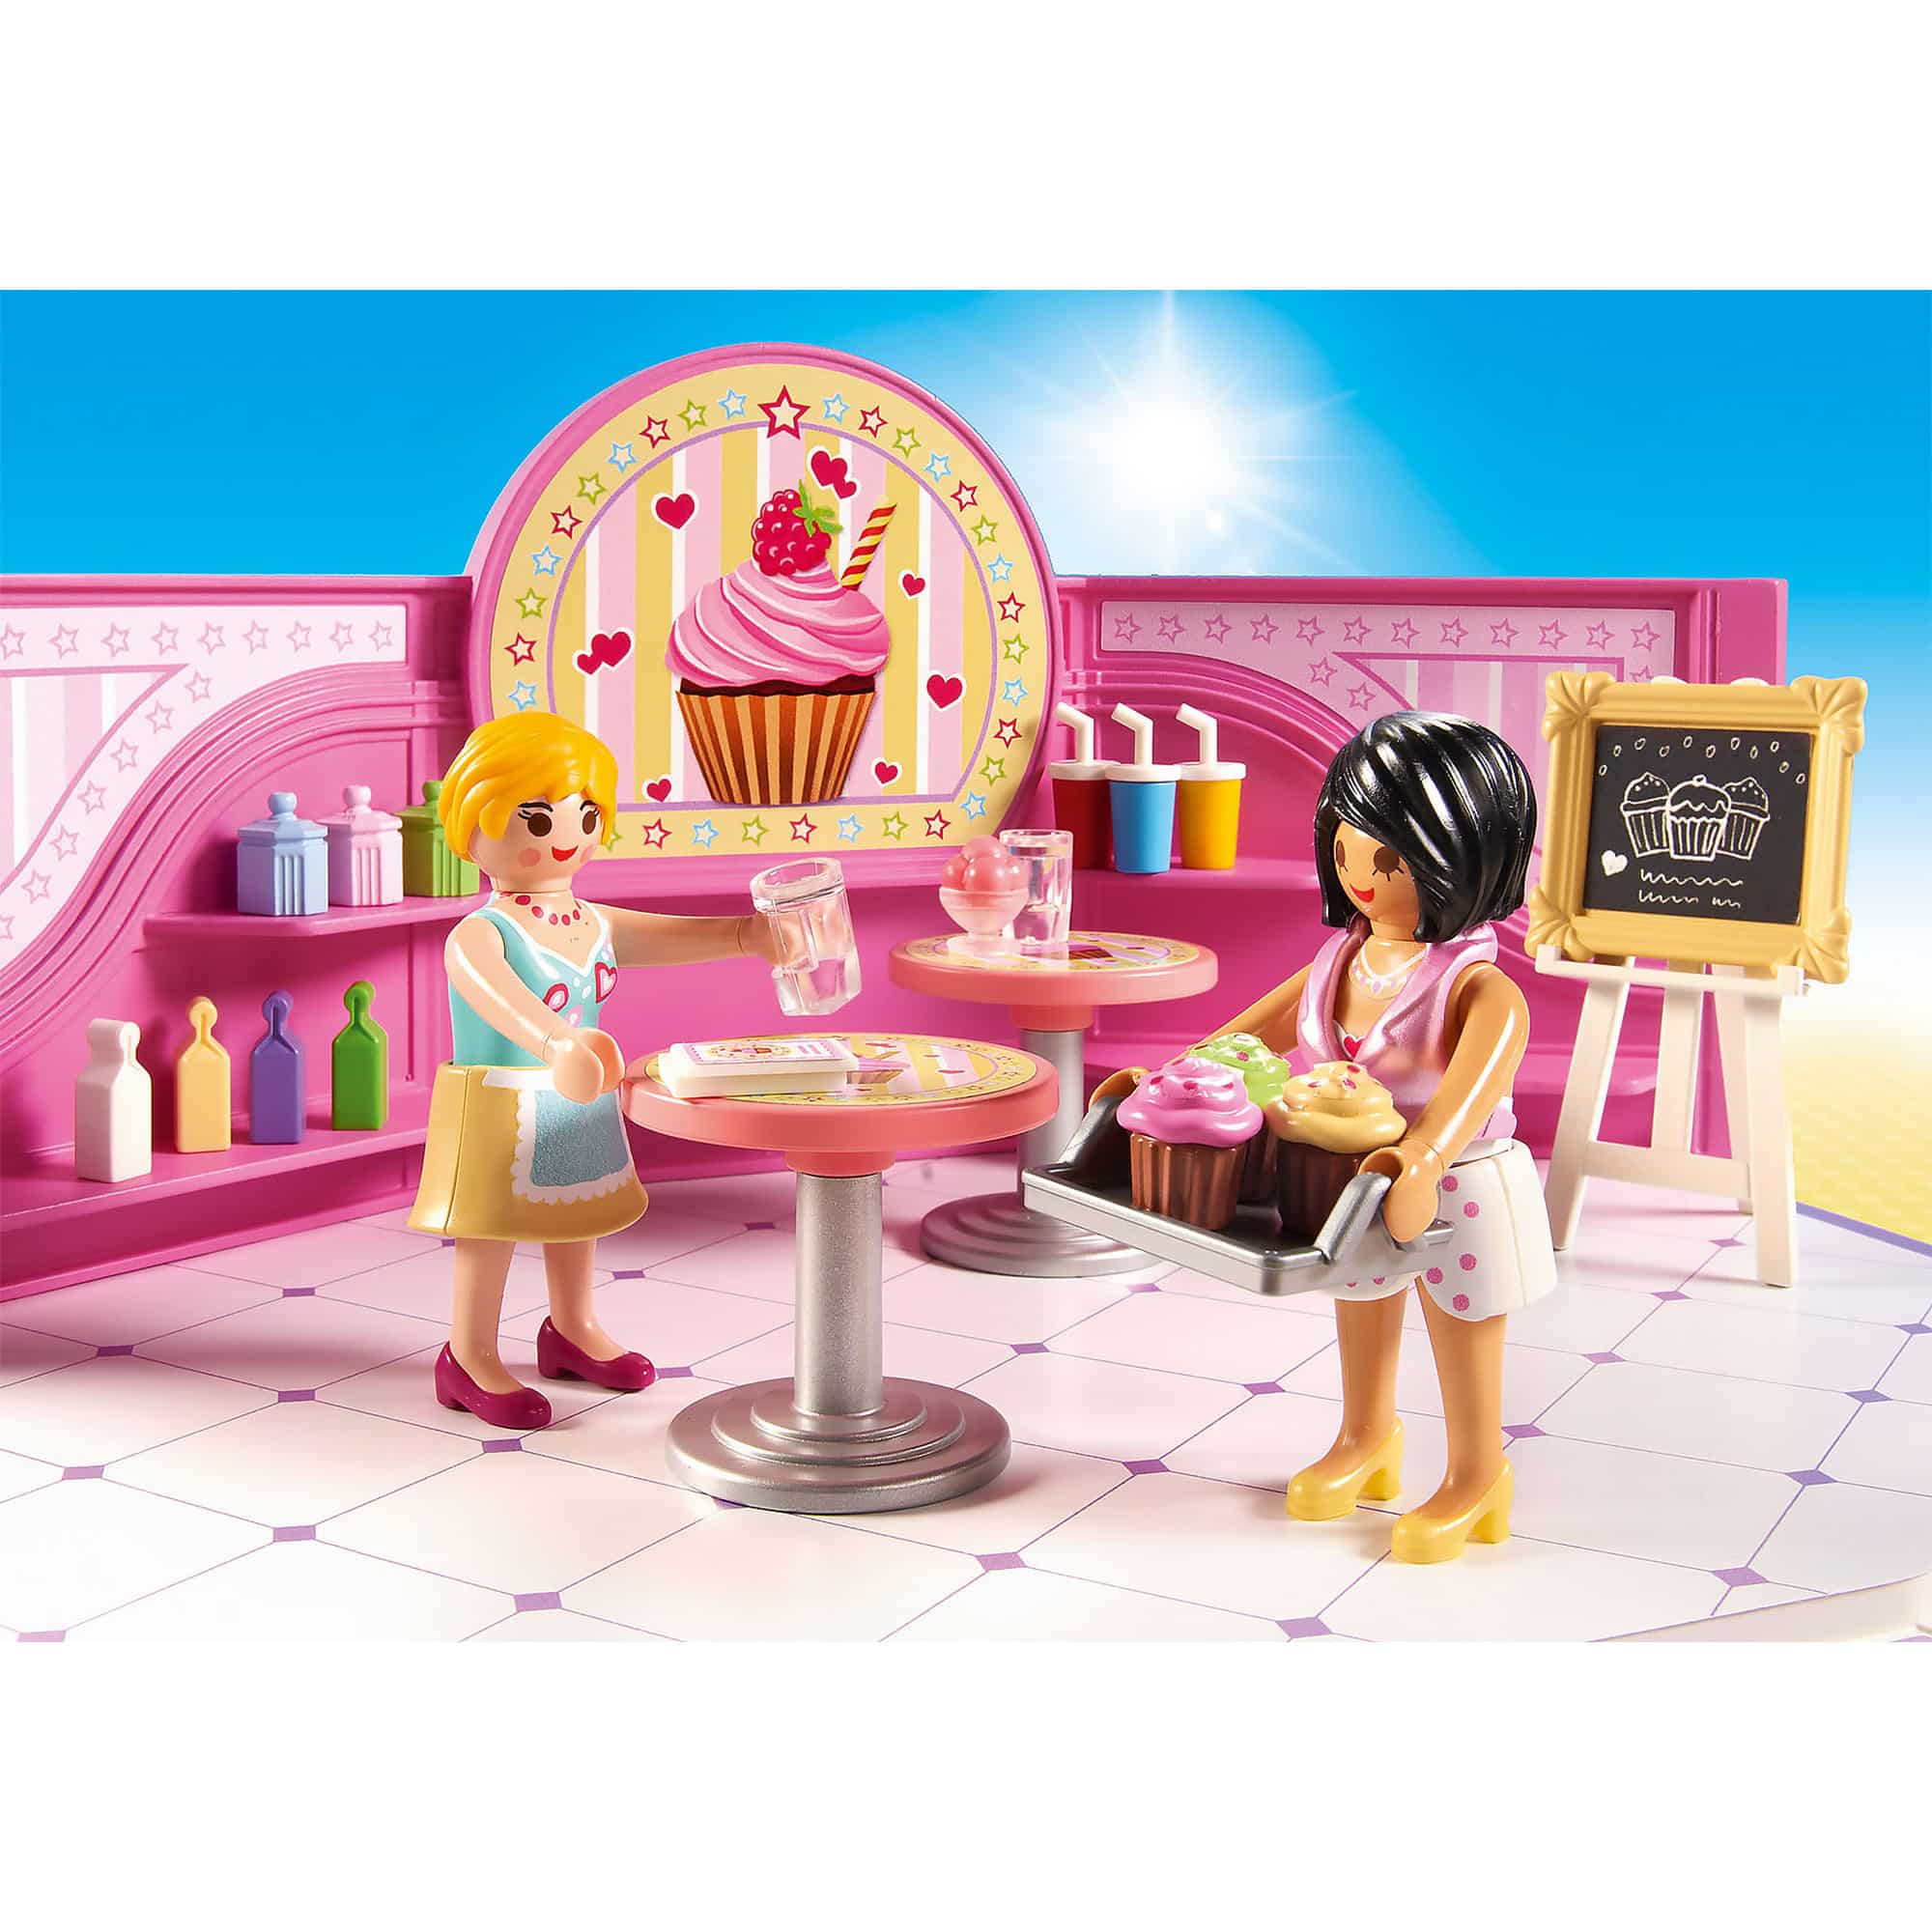 Playmobil - City Life - Cupcake Shop 9080